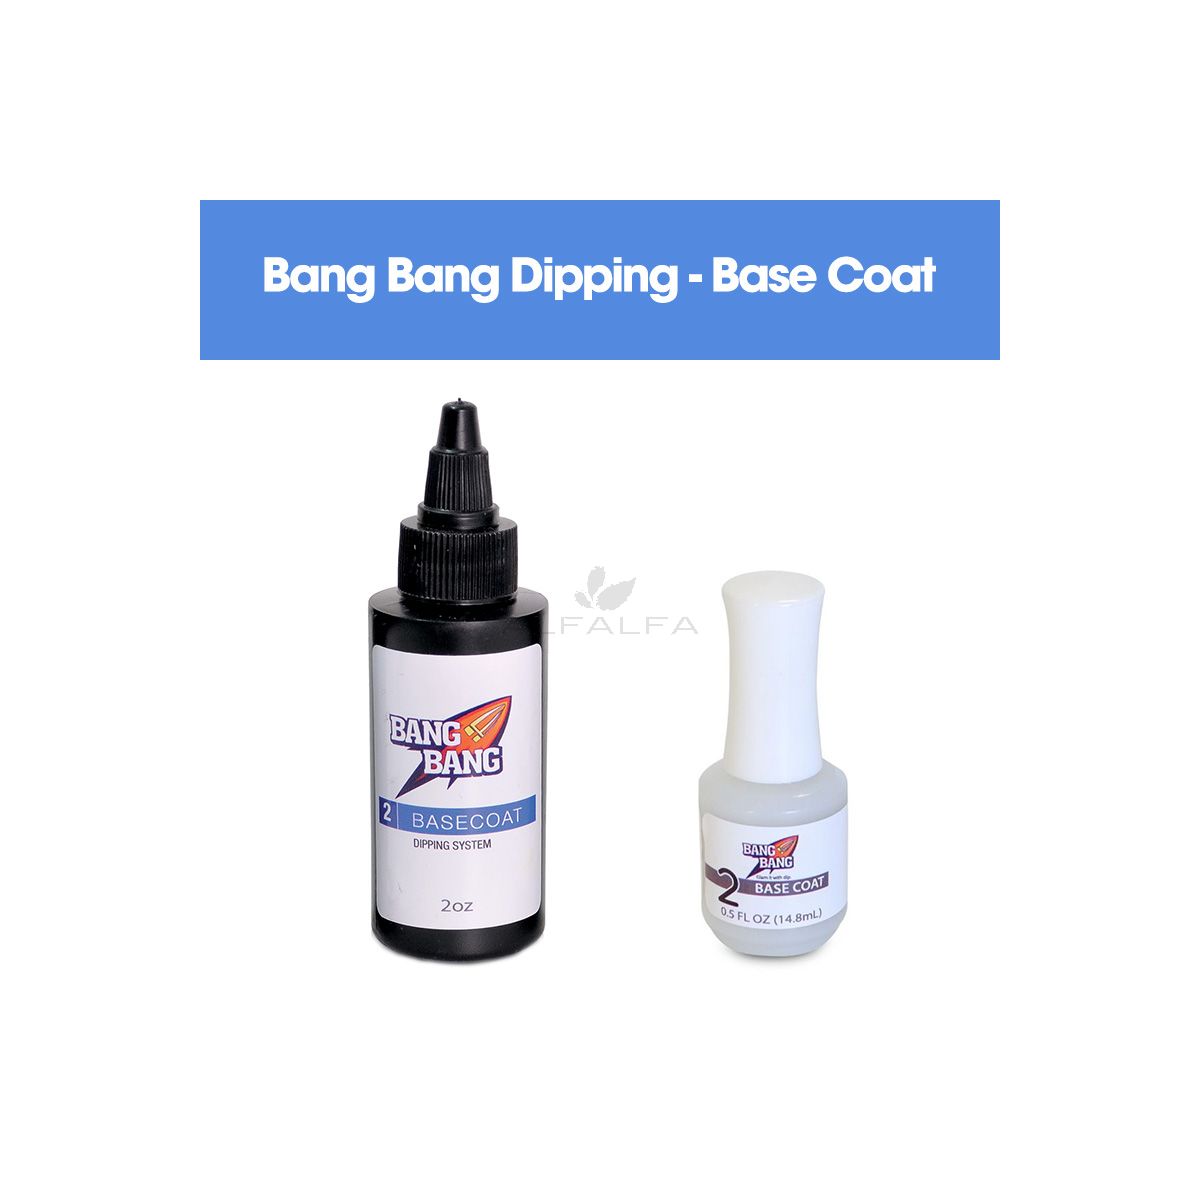 BangBang Dipping - Base Coat 